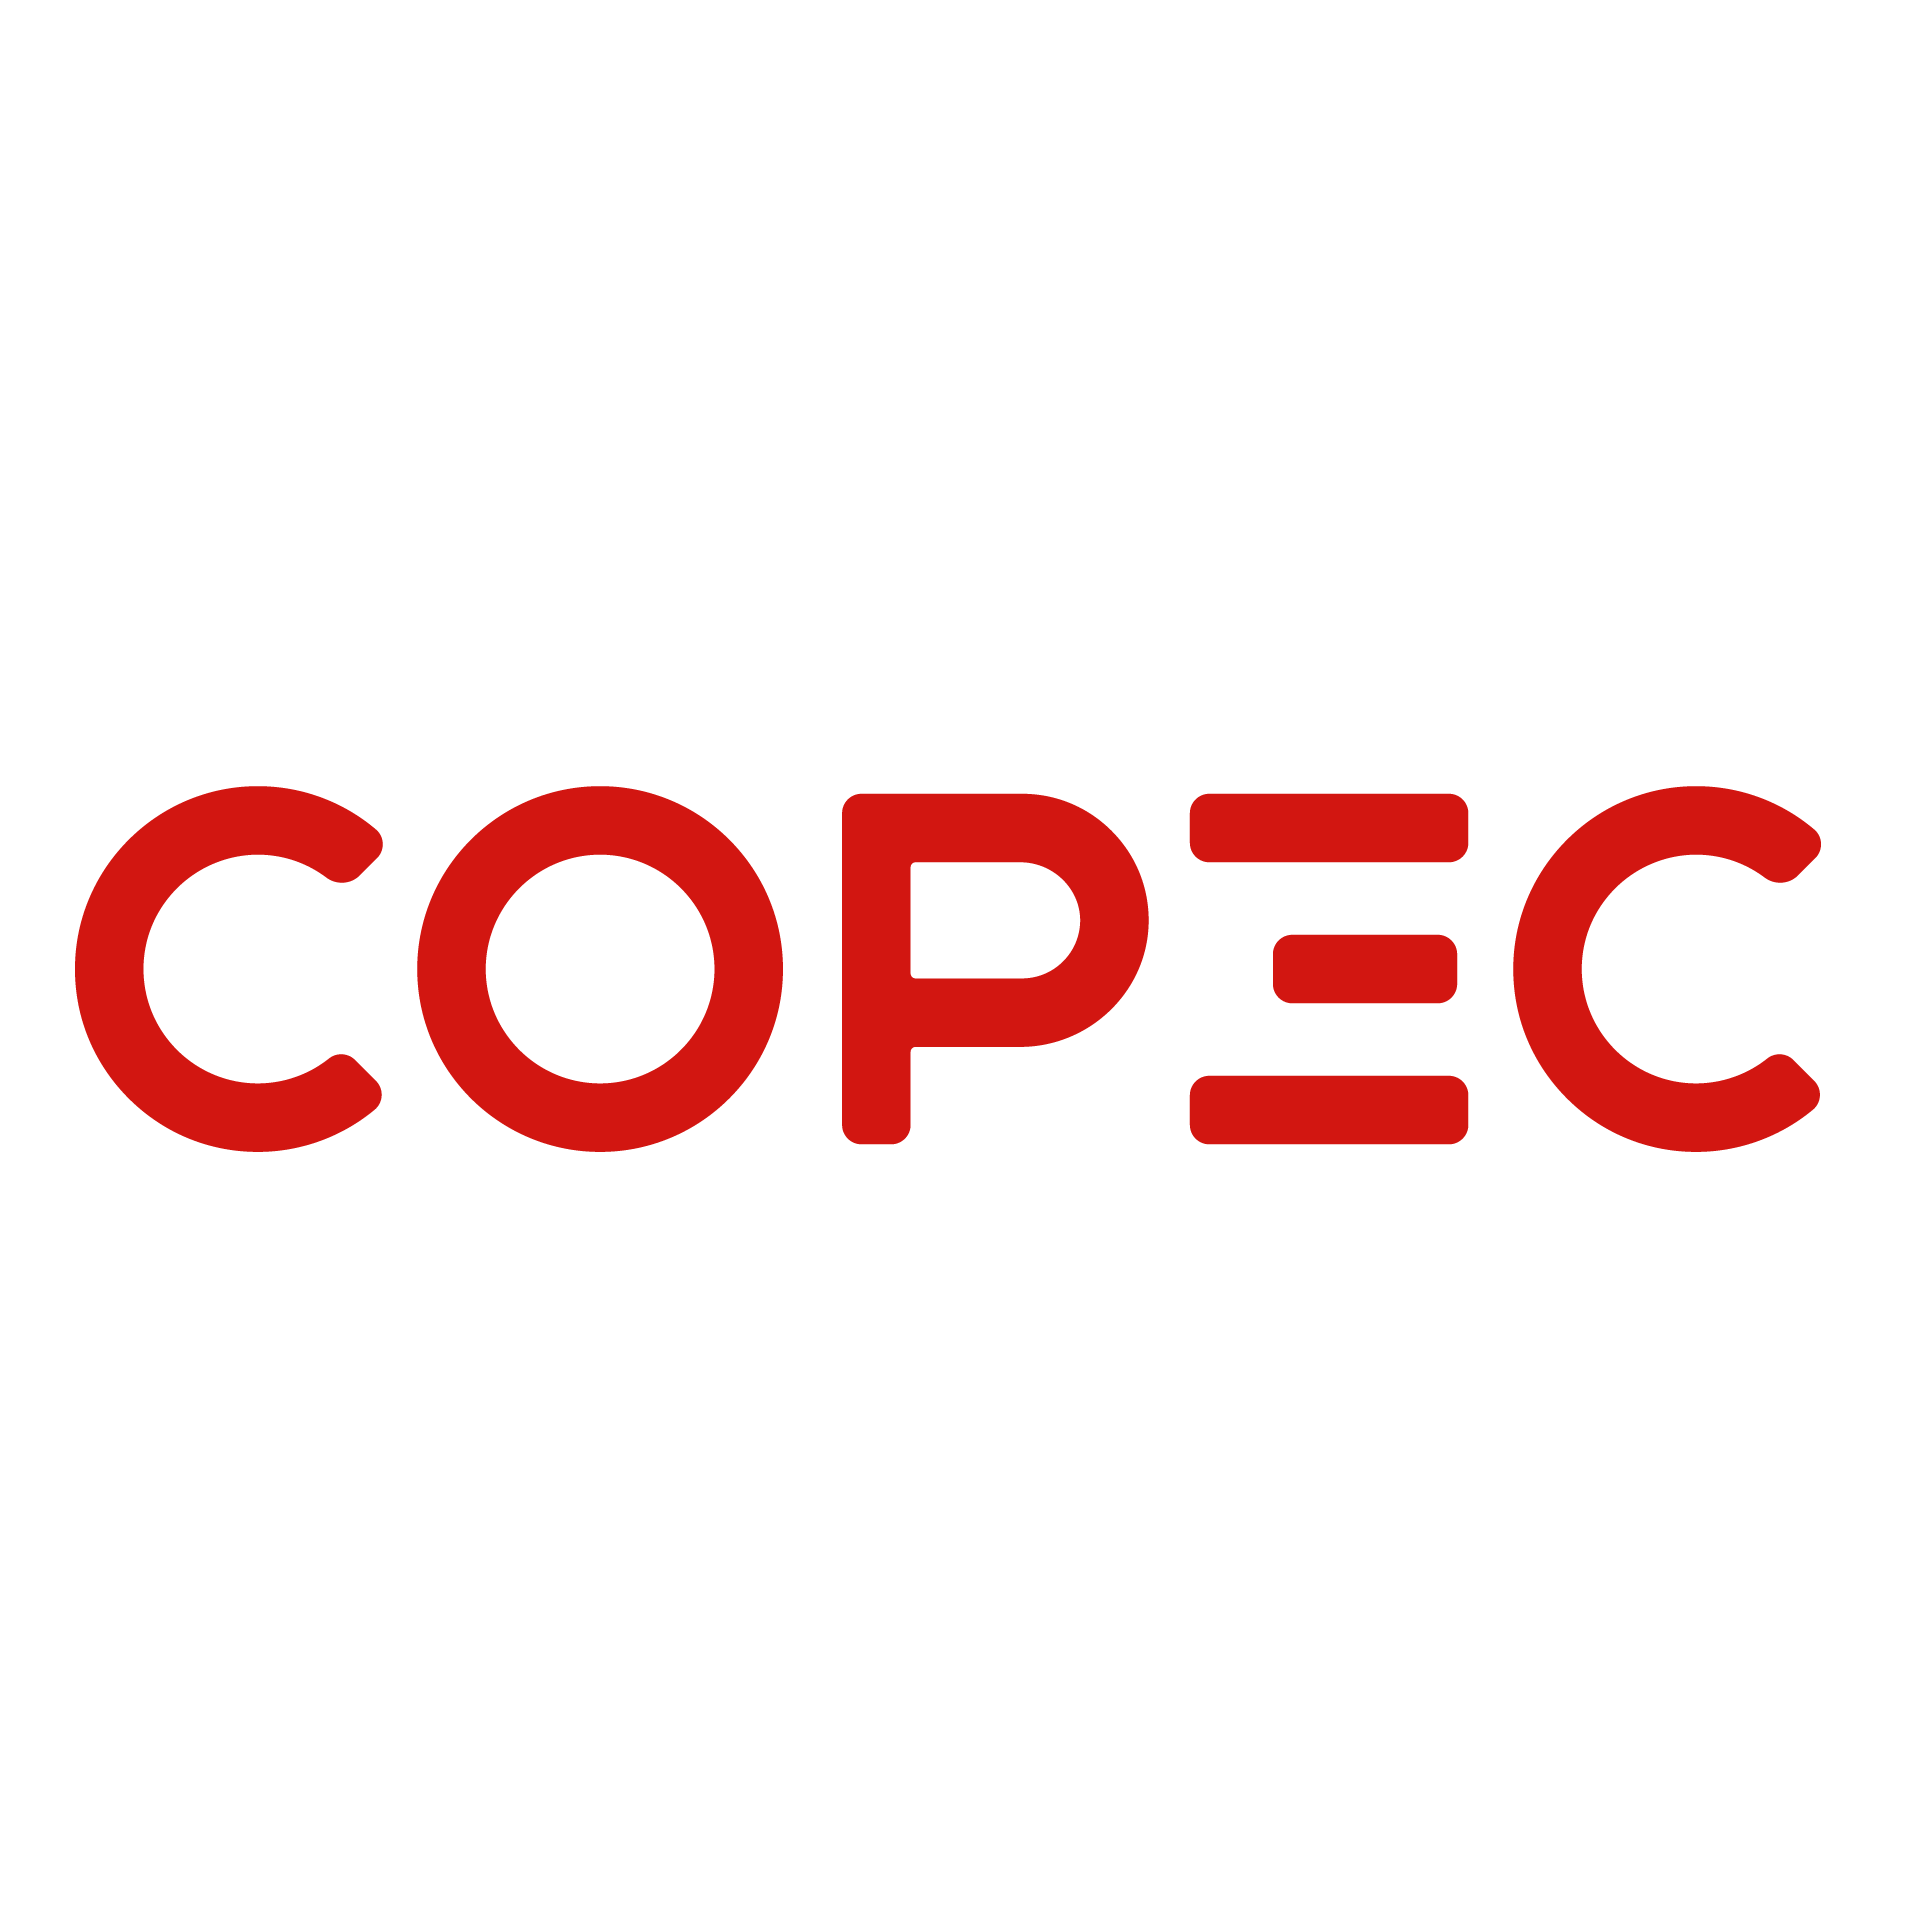 COPEC, Compañía de Petróleos de Chile